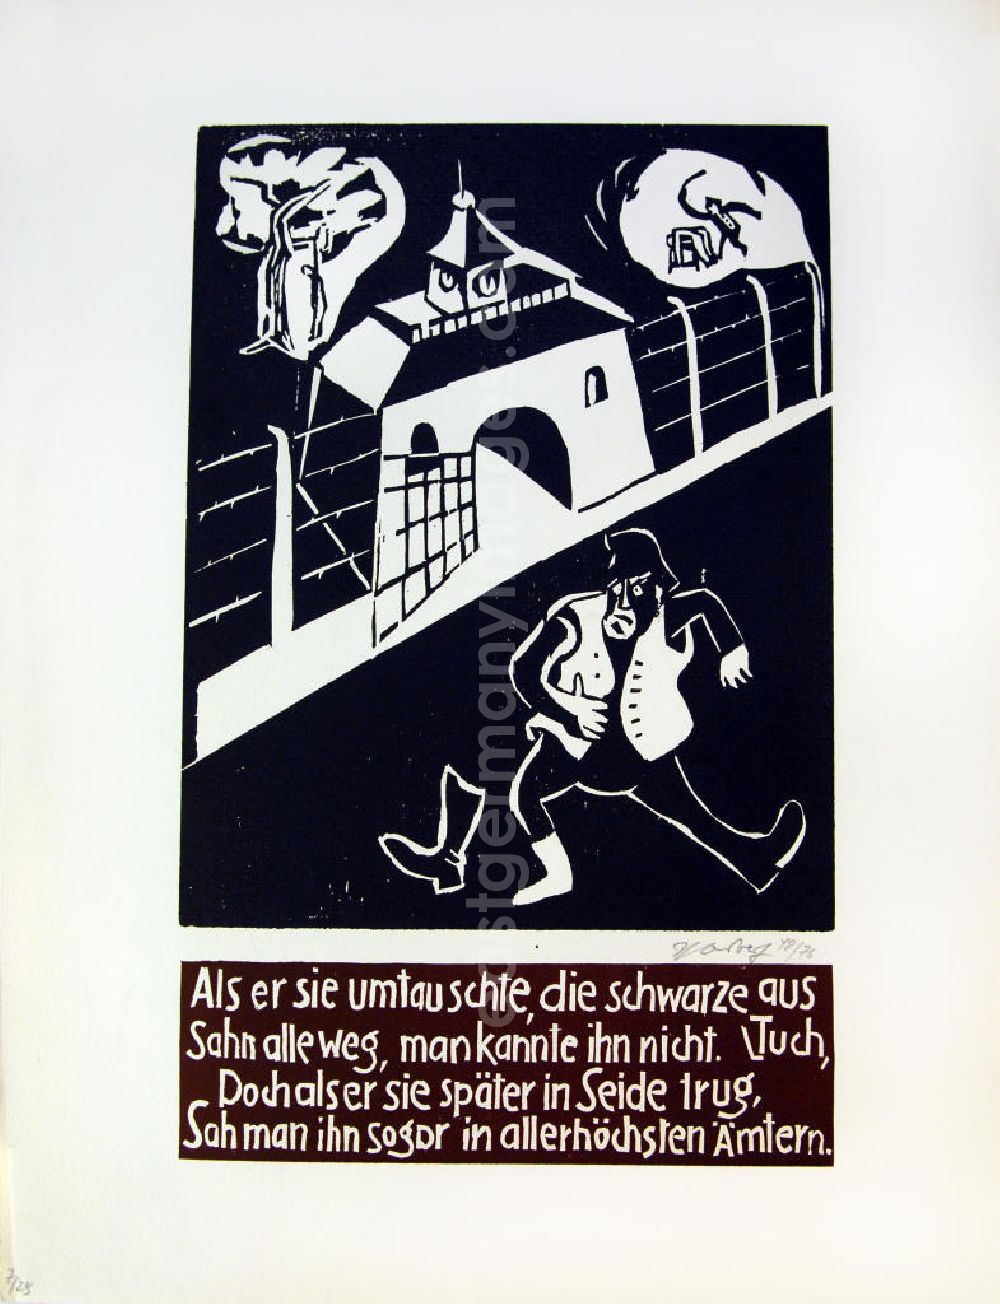 GDR image archive: Berlin - Grafik von Herbert Sandberg Die weiße Weste aus dem Jahr 195